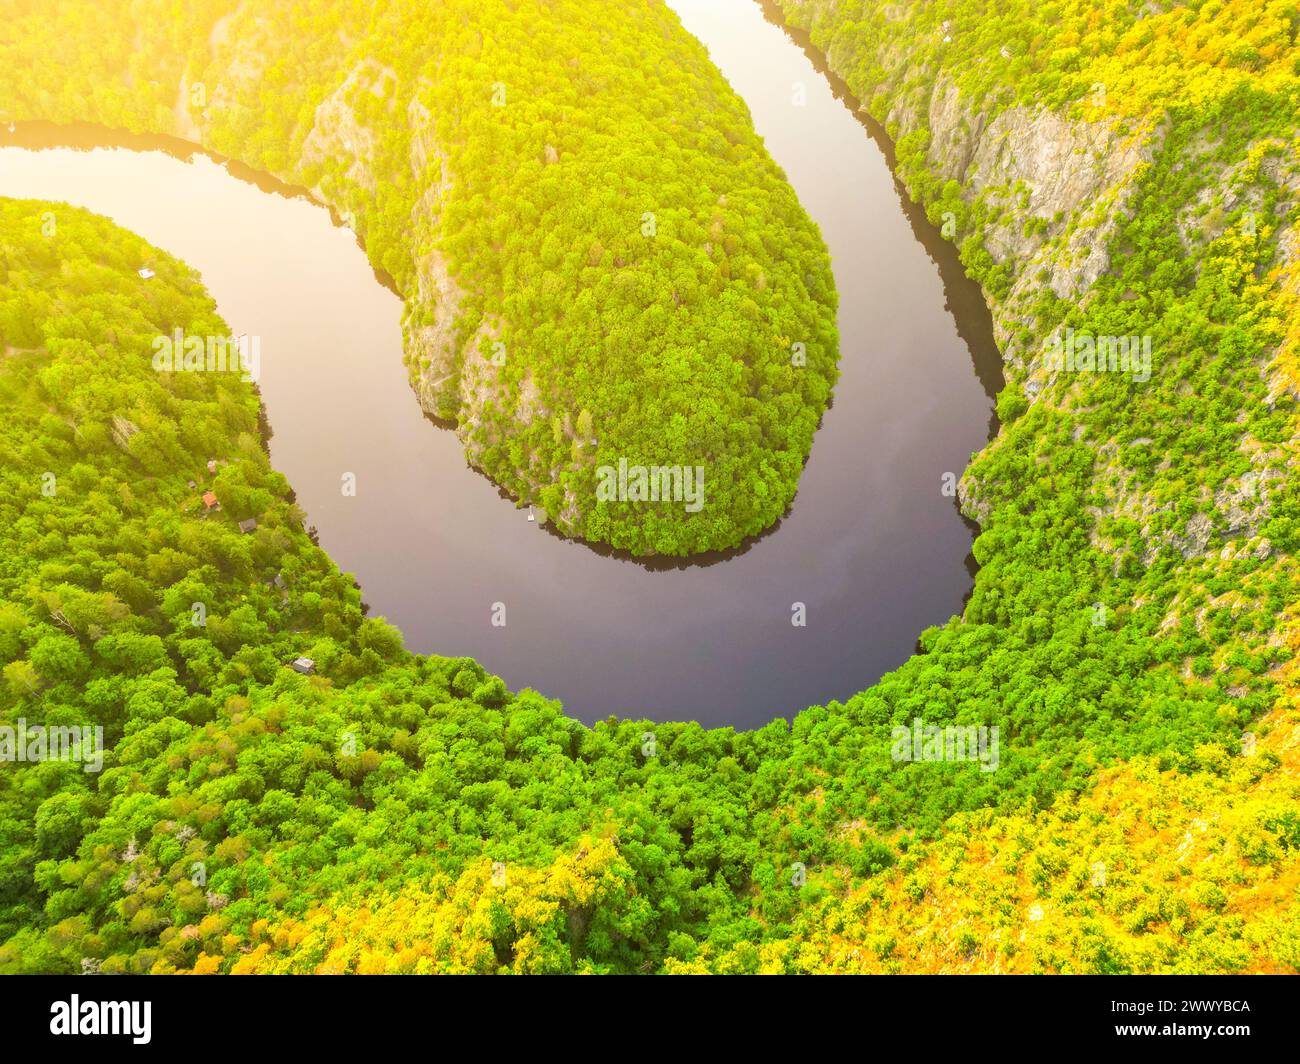 Ein Blick aus der Vogelperspektive auf einen ruhigen, gewundenen Fluss, der während der goldenen Stunde von üppigem Grün umgeben ist und die unberührte Schönheit der Natur zeigt. Stockfoto